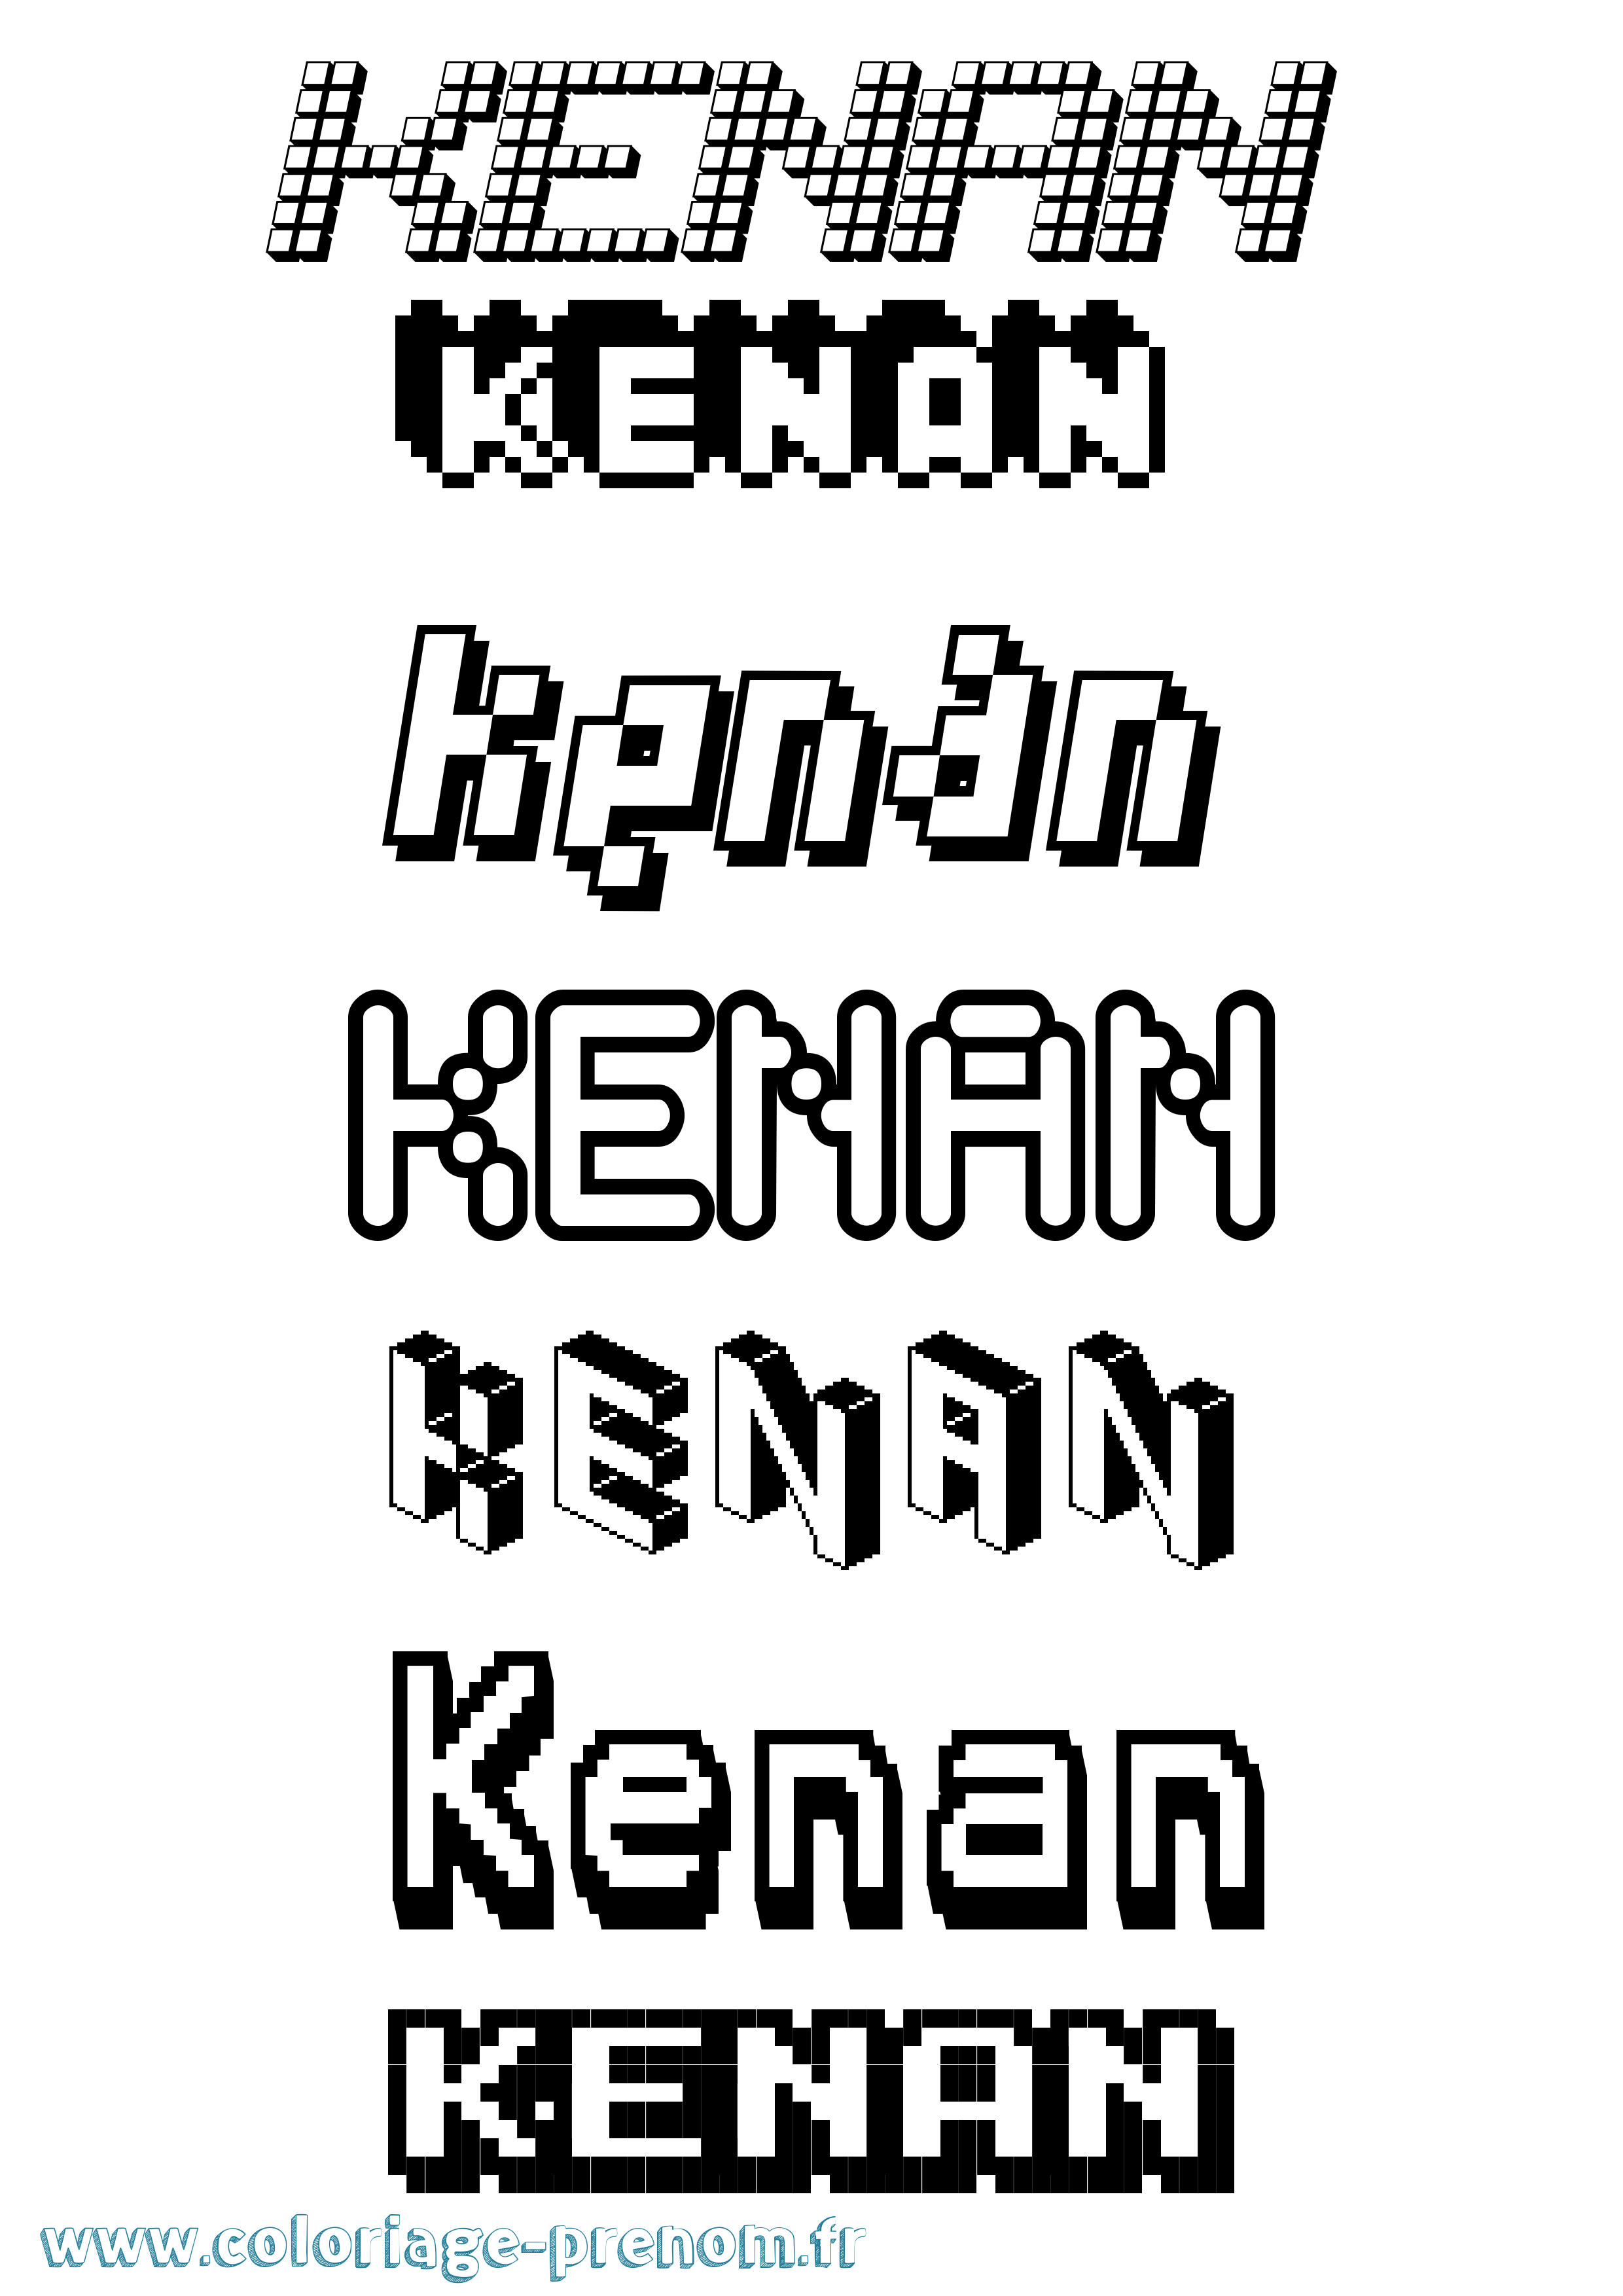 Coloriage prénom Kenan Pixel